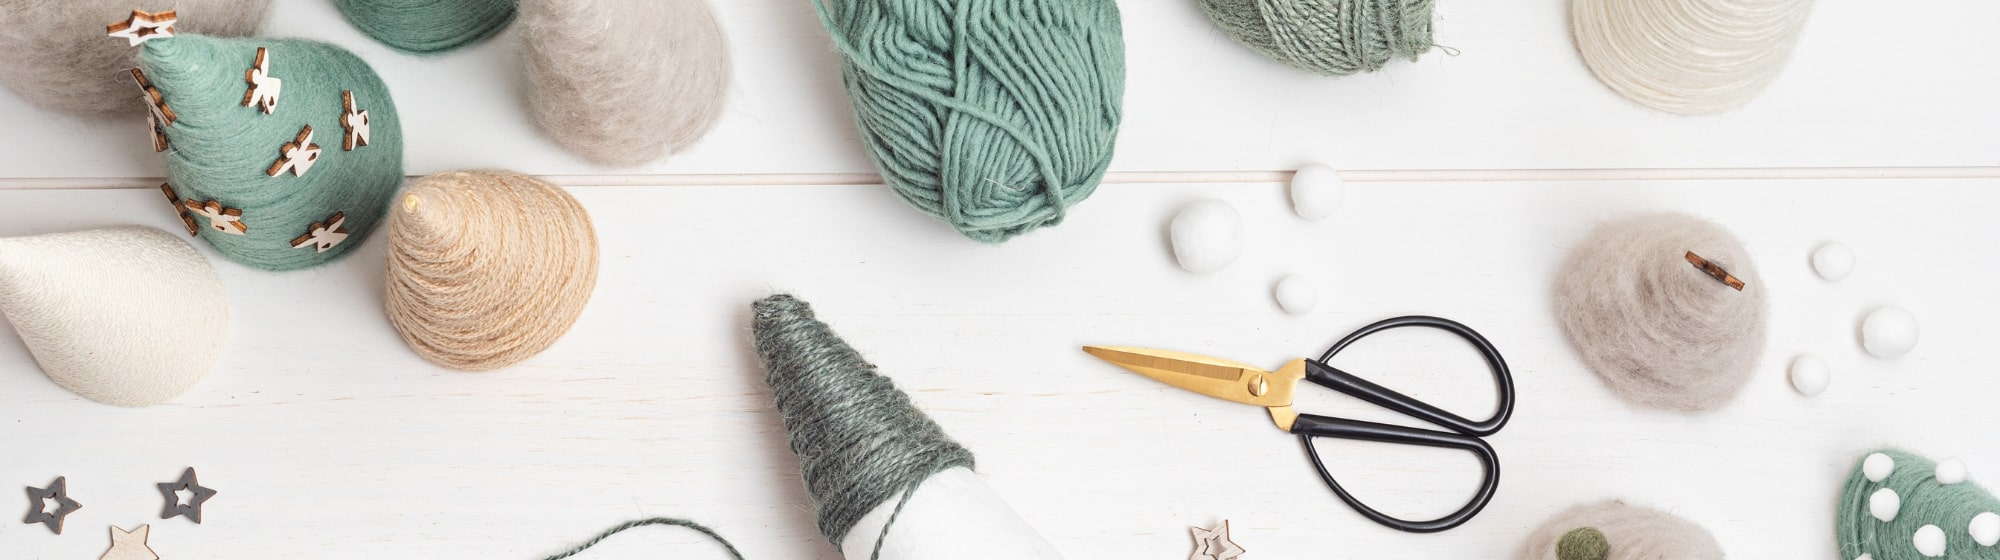 Création DIY en laine en forme de sapin pour Noël 